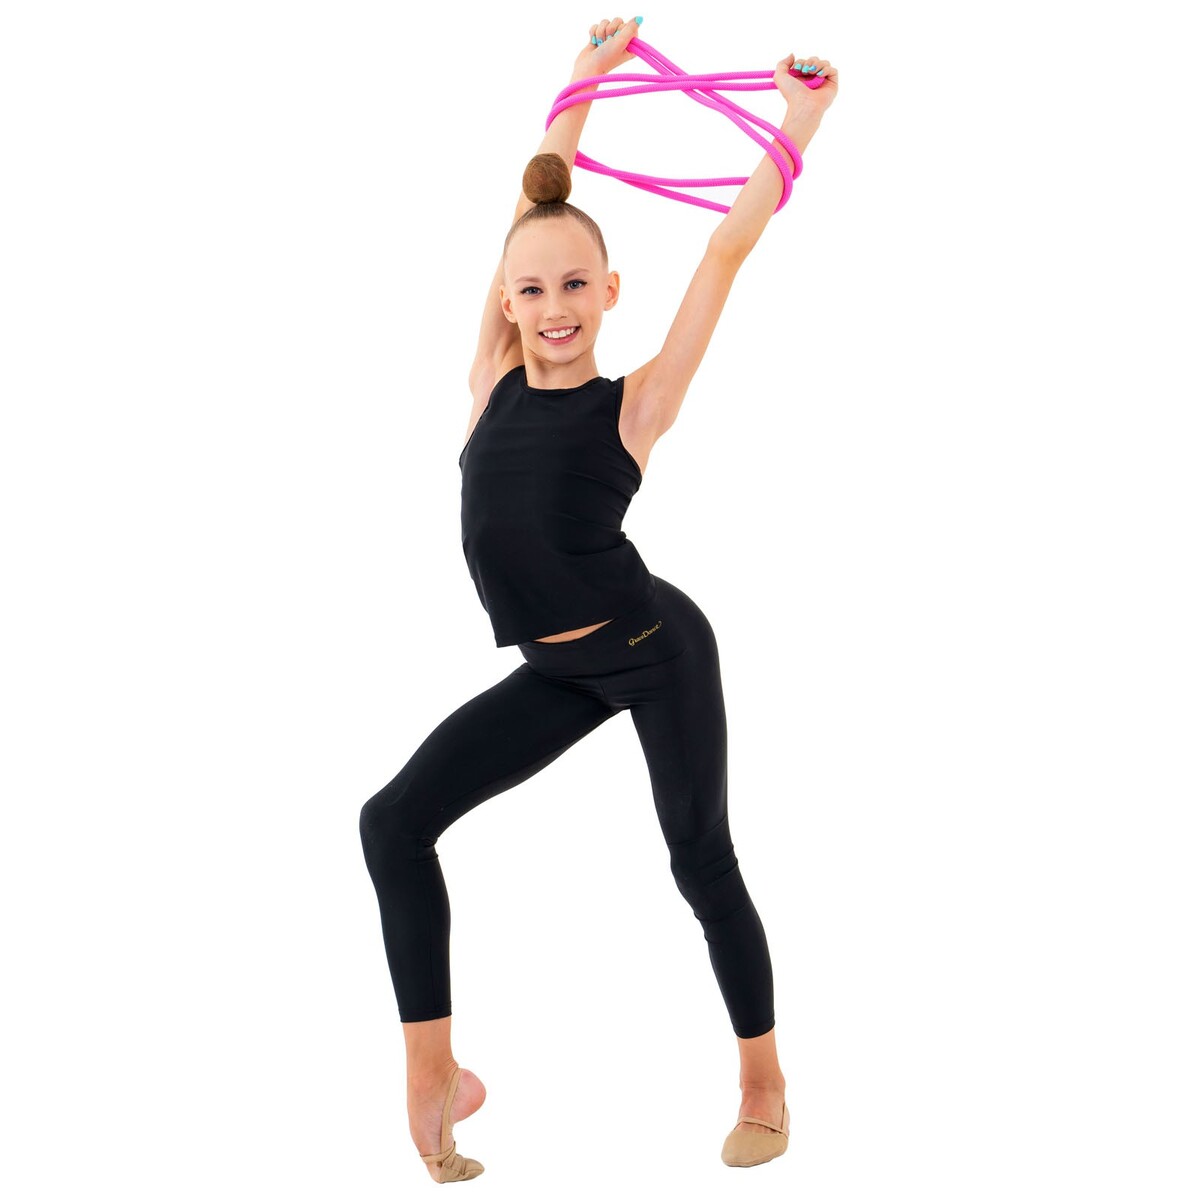 фото Скакалка гимнастическая утяжеленная grace dance, 2,5 м, 150 г, цвет неон розовый